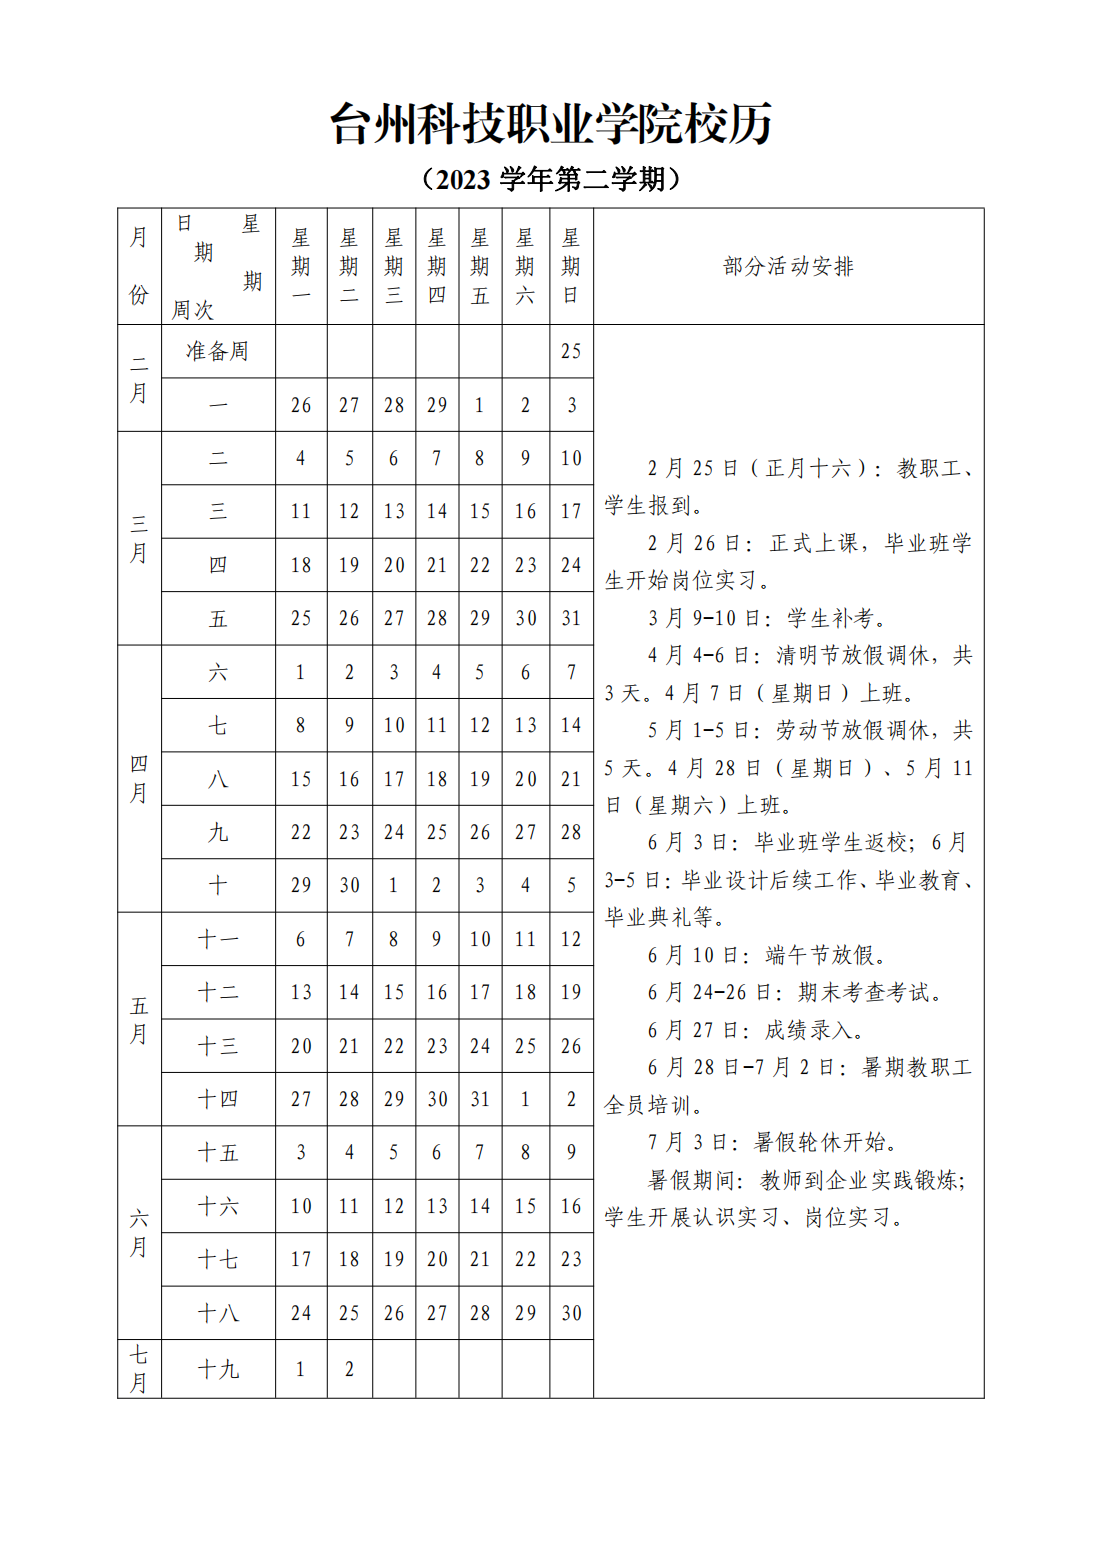 台州科技职业学院2023学年第二学期校历_00.png